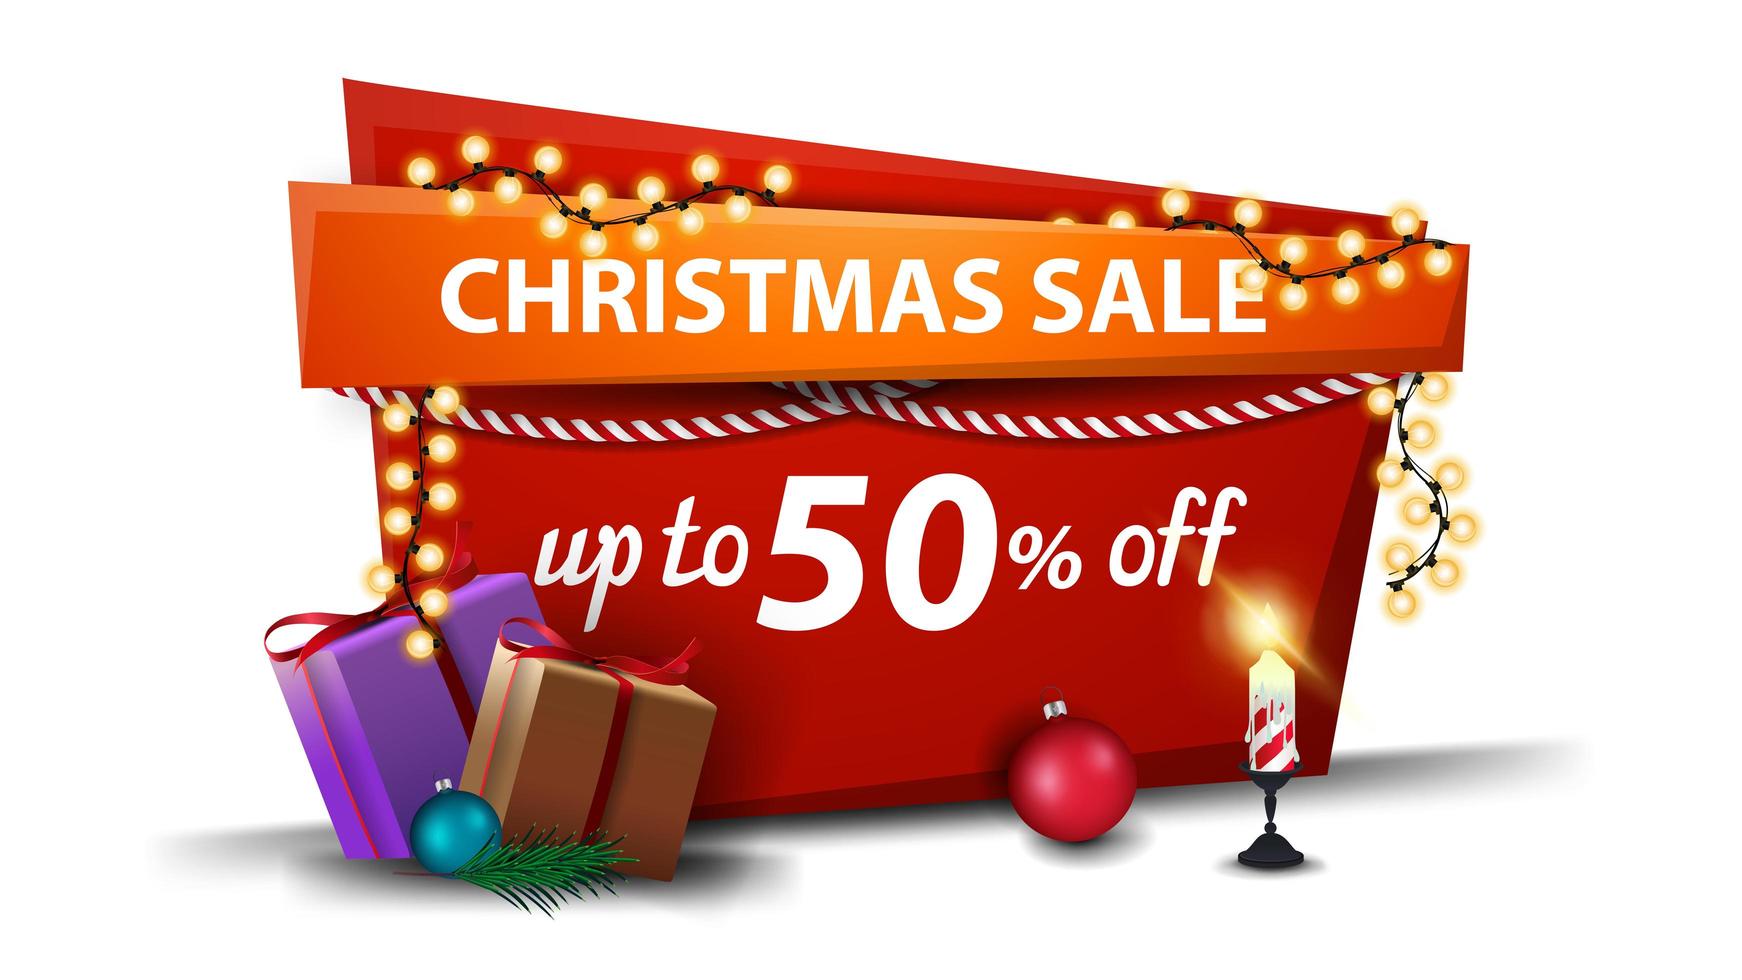 Weihnachtsverkauf, bis zu 50 Rabatt, rotes Banner im Cartoon-Stil mit Girlande und Weihnachtsgeschenken vektor